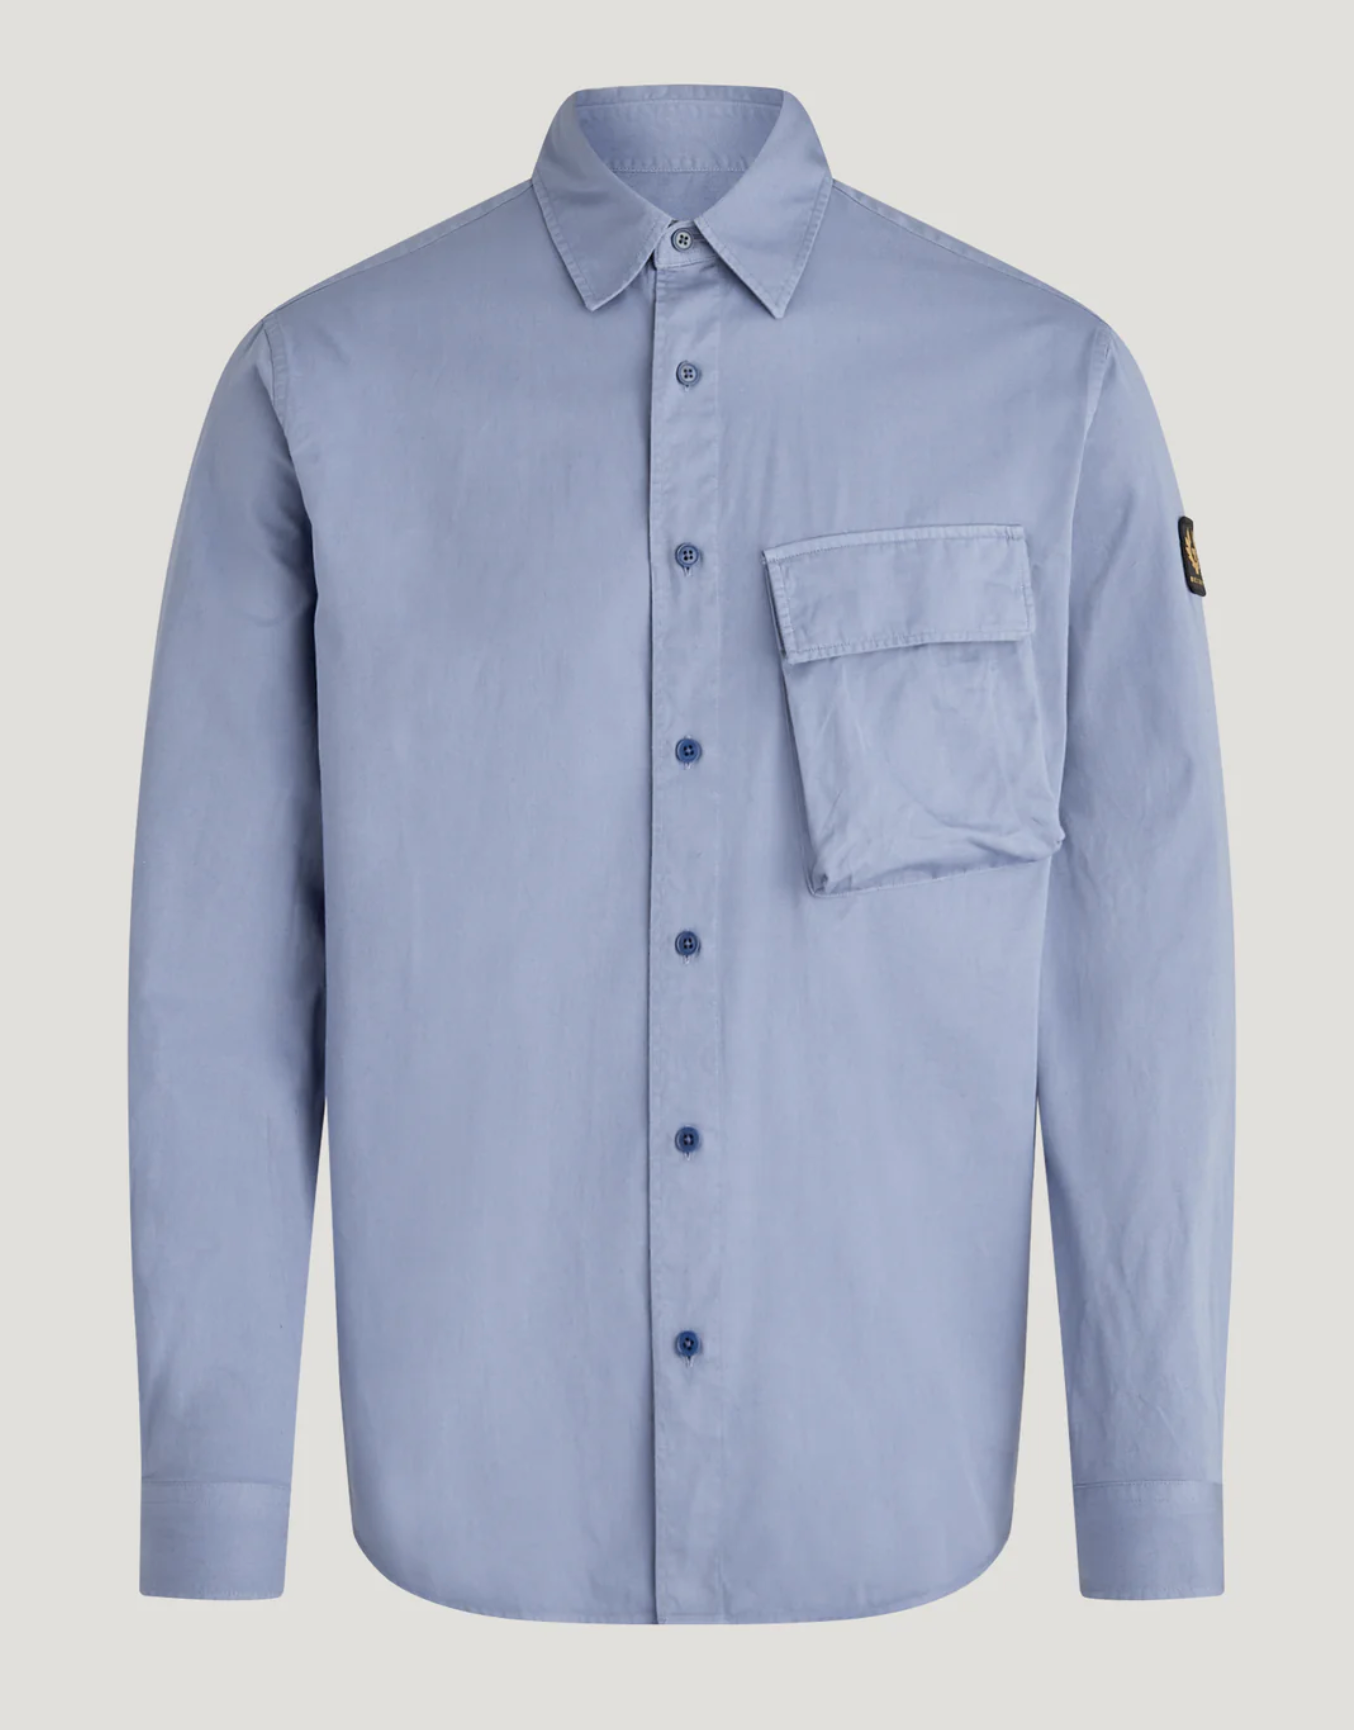 Belstaff "Scale" Long Sleeve Shirt Blue Flint